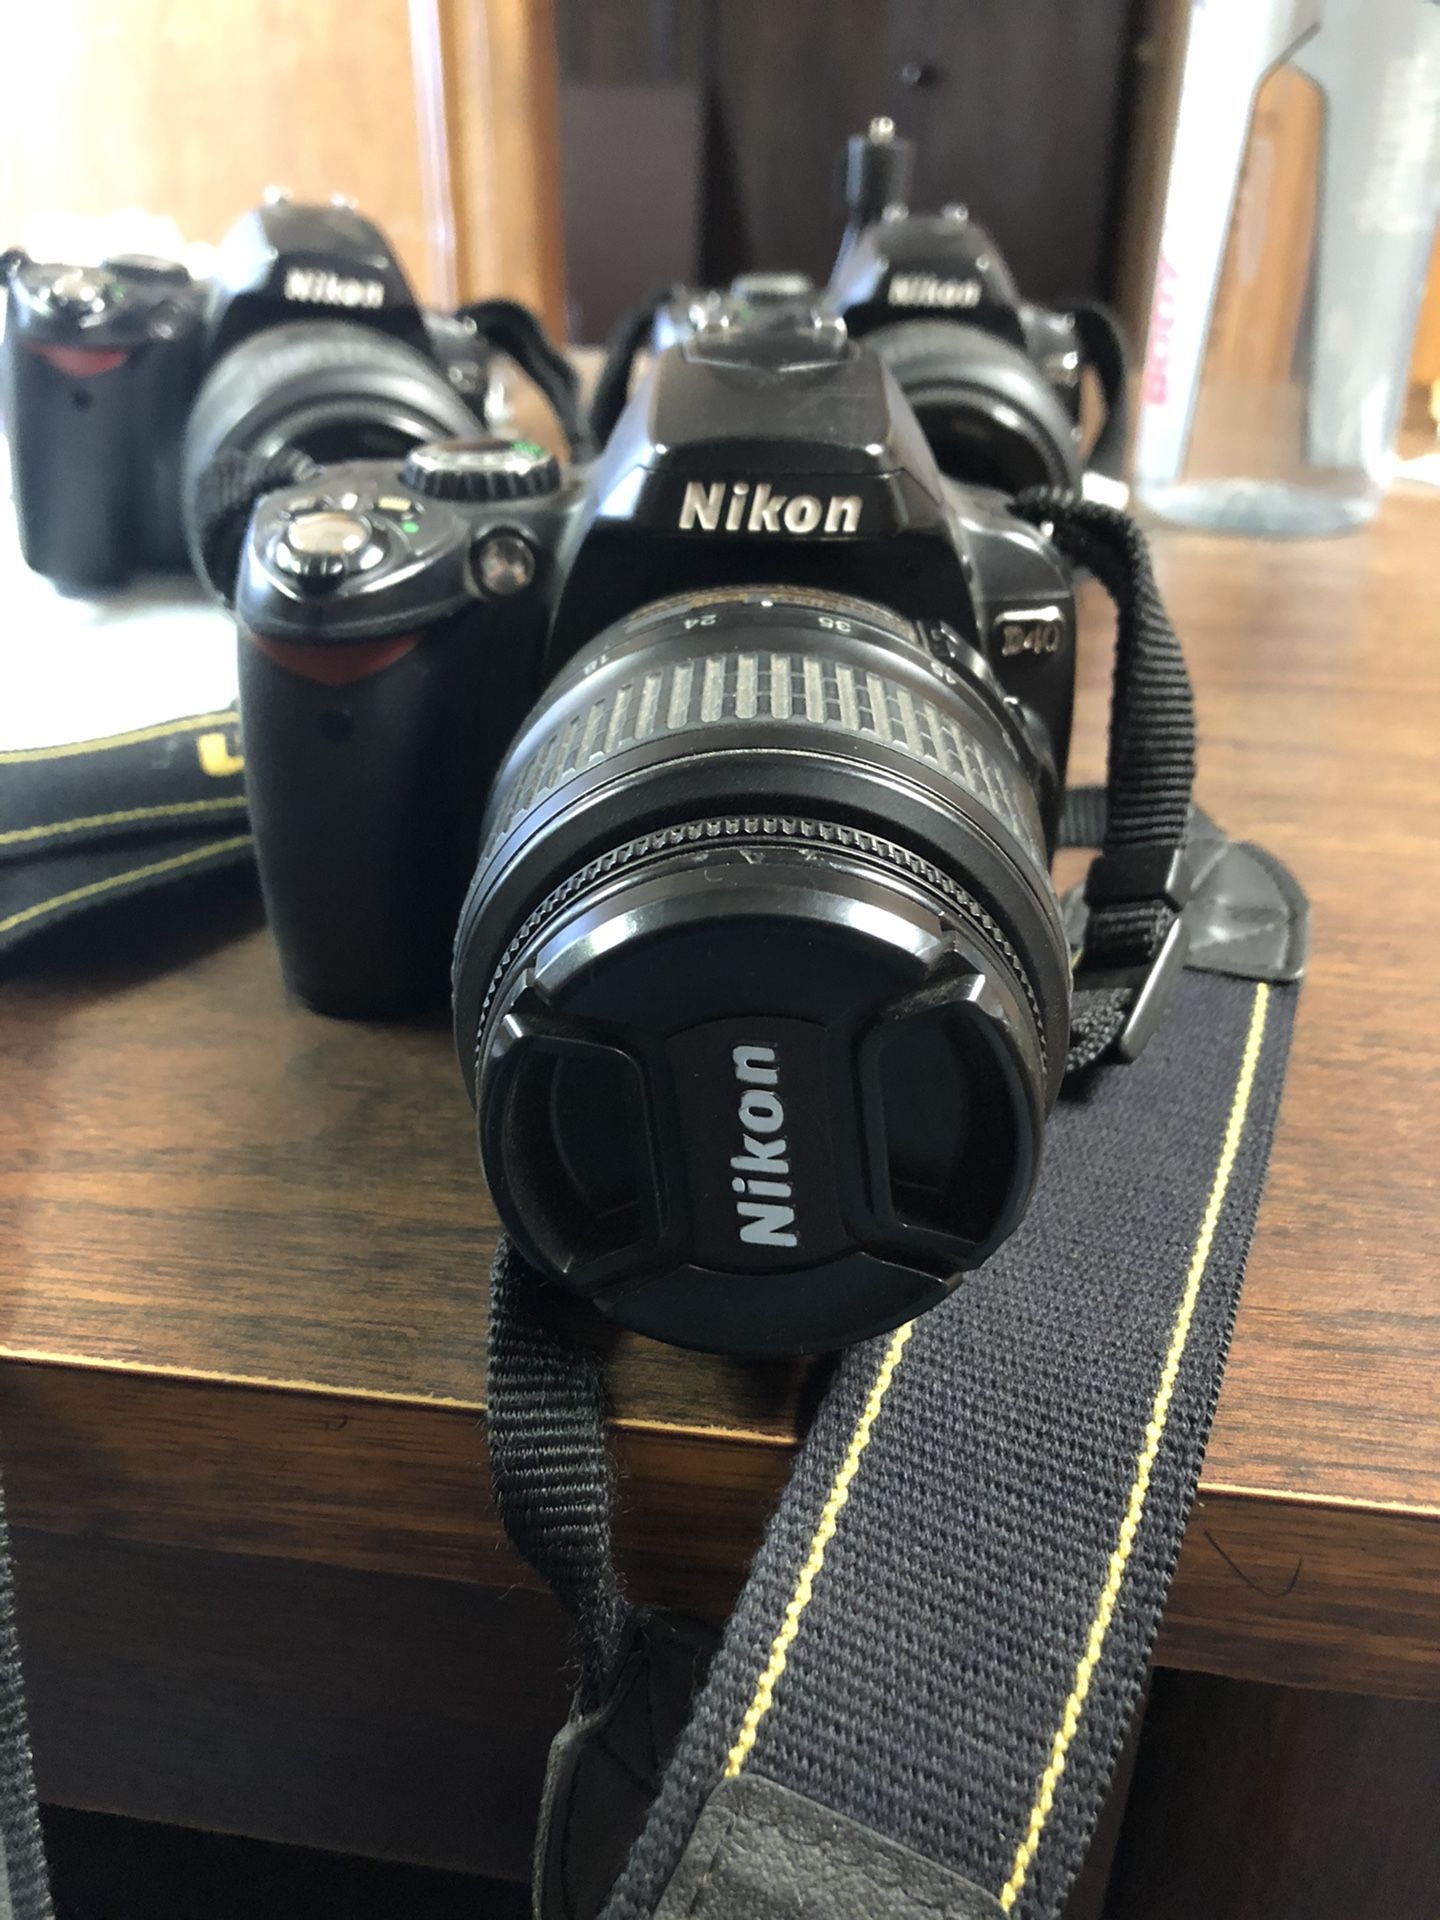 Nikon D D40 6.1MP Digital SLR Camera - Silver (Kit w/ AF-S DX ED G 18-55mm Lens)